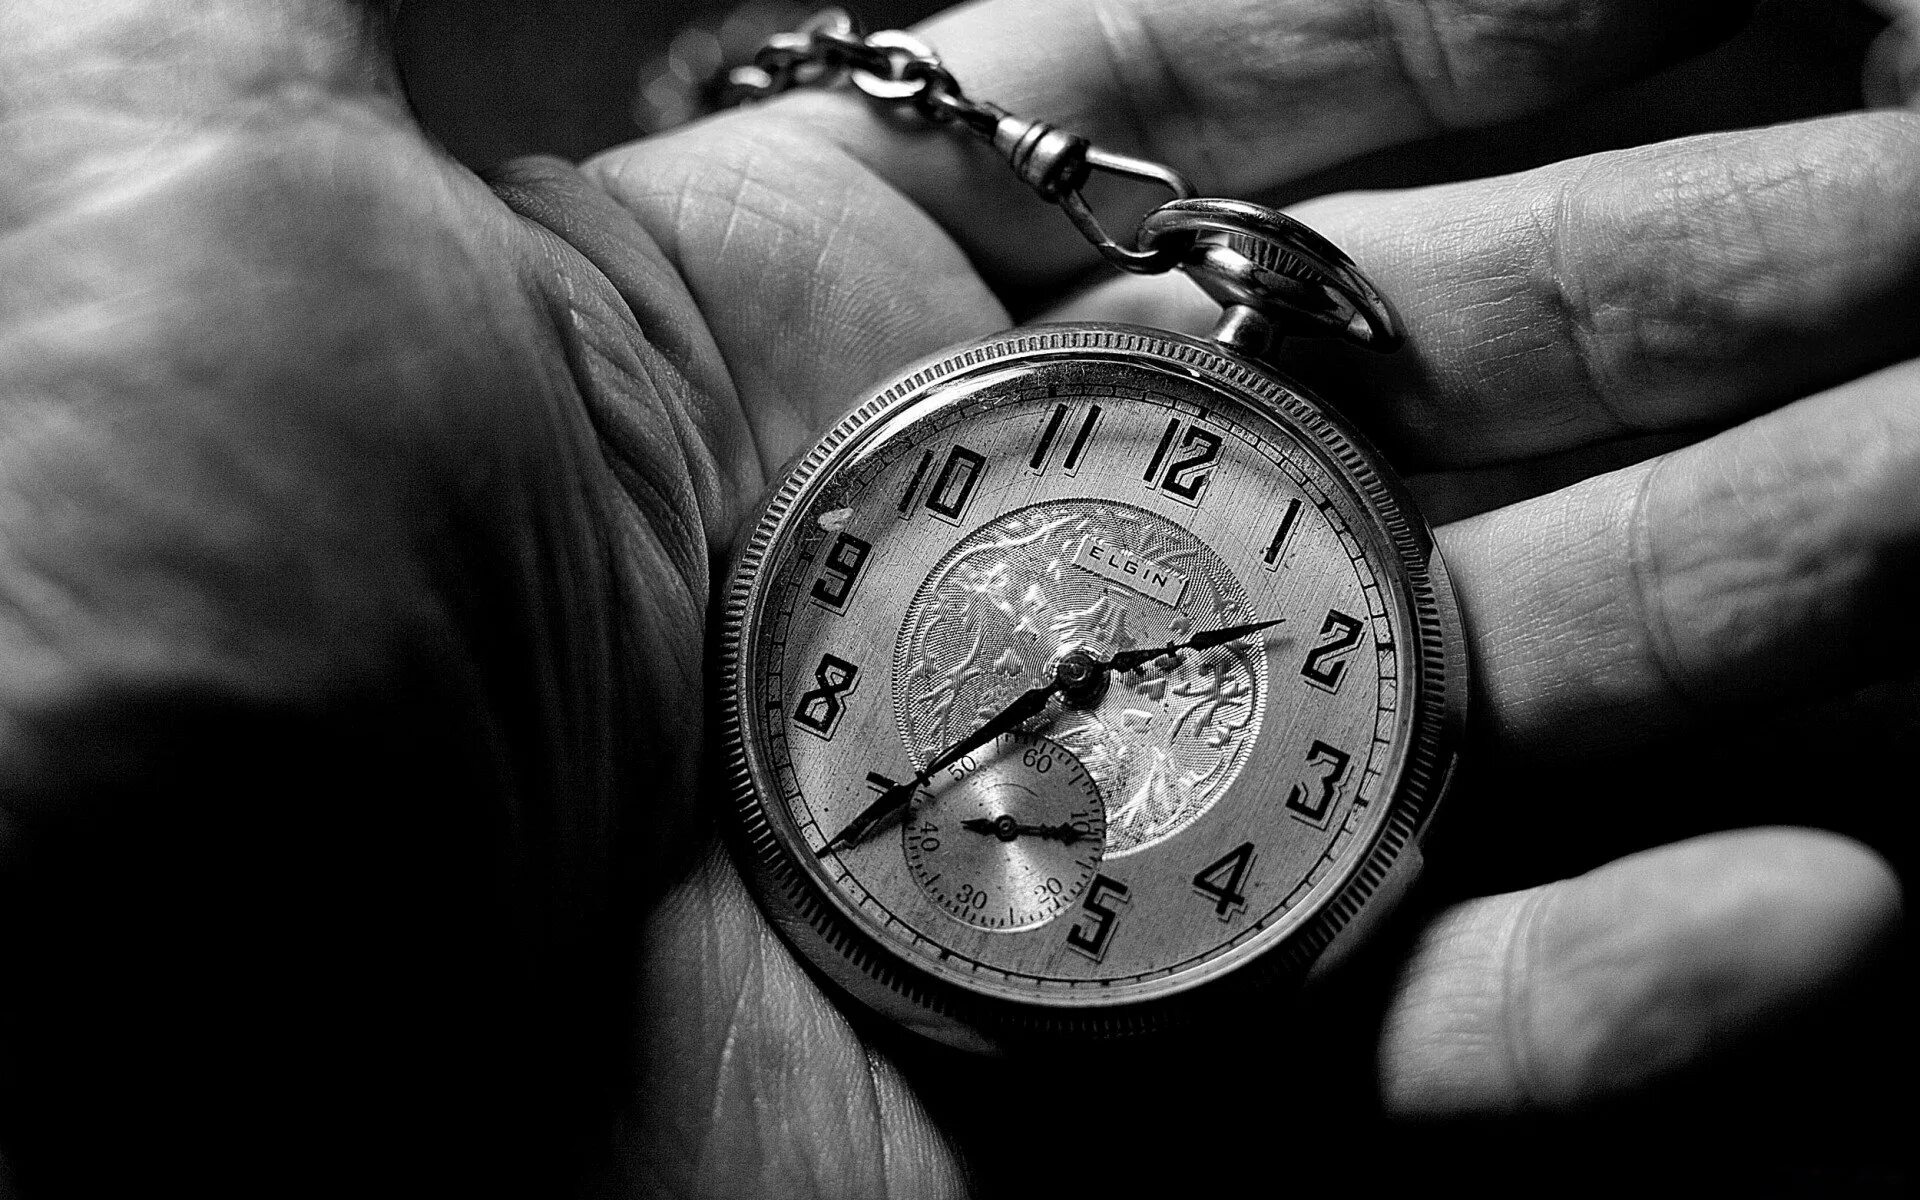 Нет свободного времени ни. Карманные часы в руке. Старые часы на руку. Красивые высказывания о времени. Часы на цепочке.